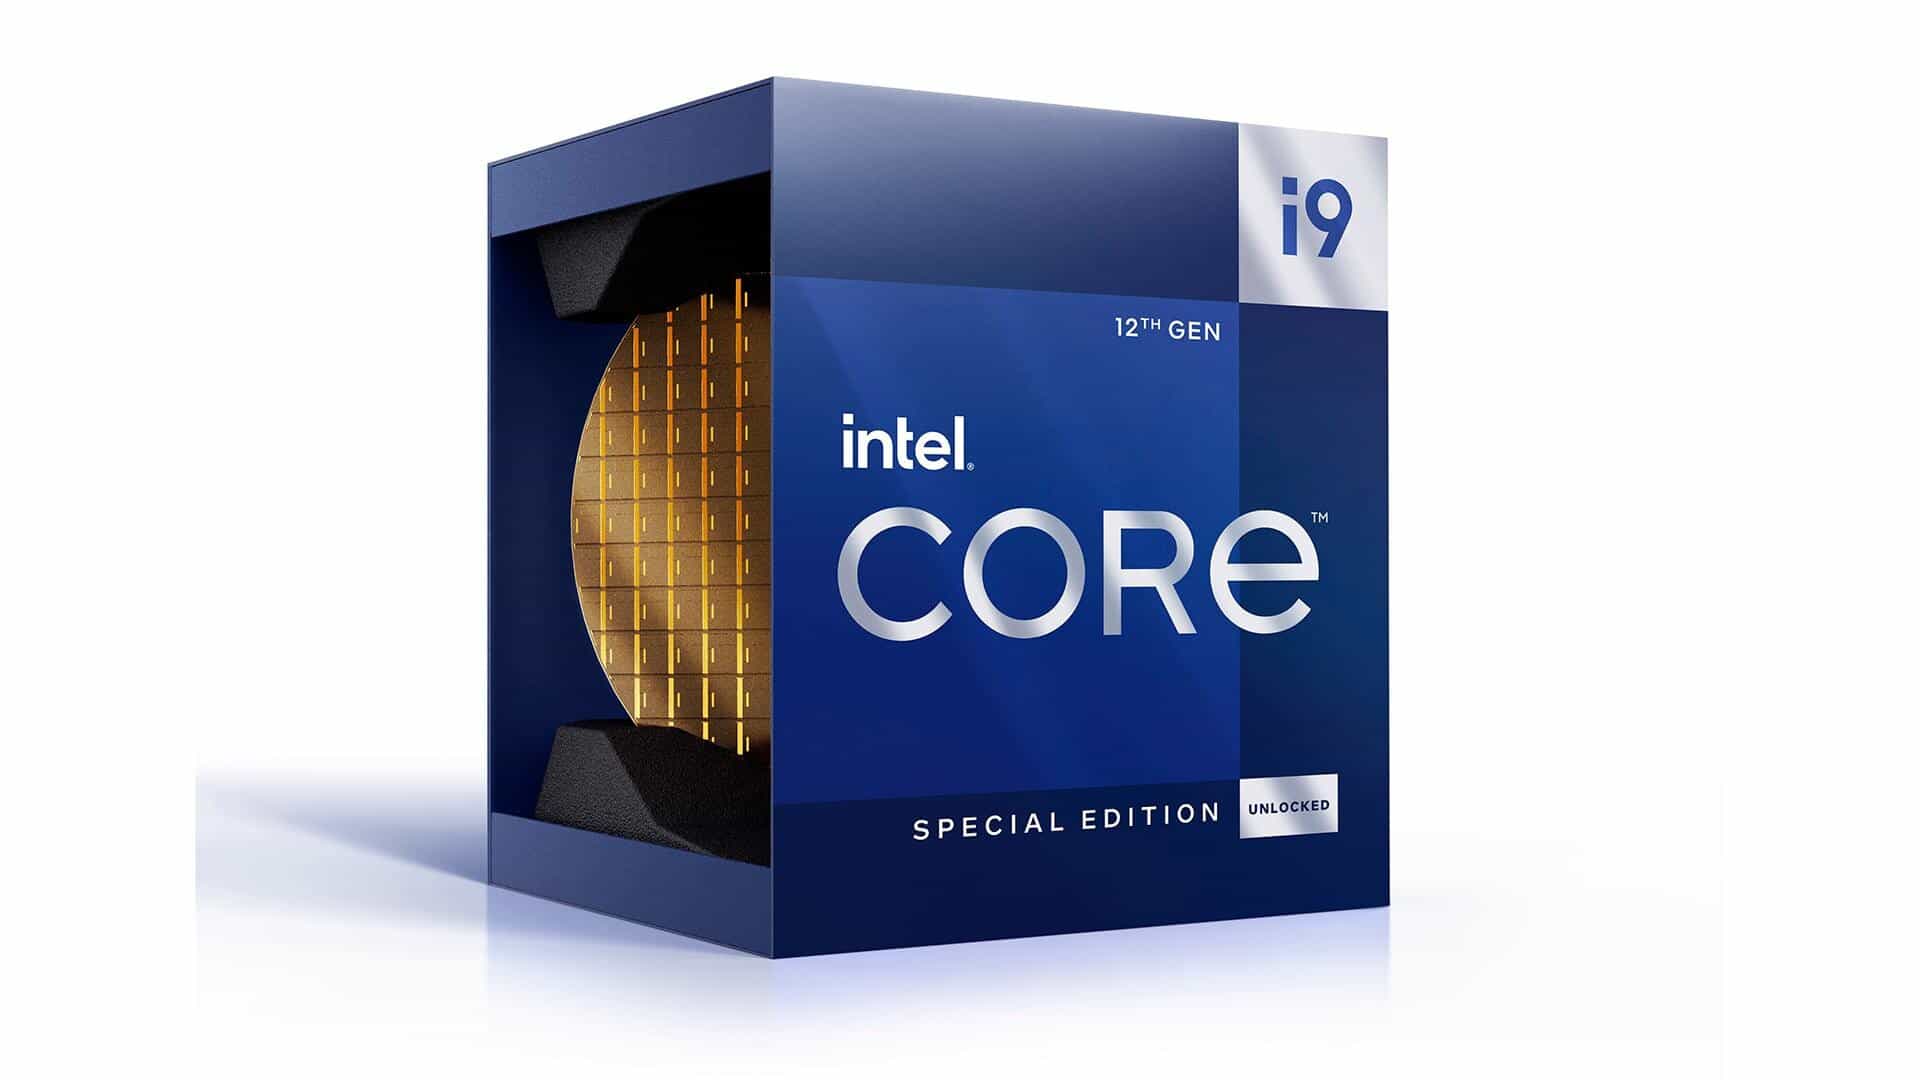 Intel Launches 12th Gen Core i9-12900KS as World's Fastest Processor